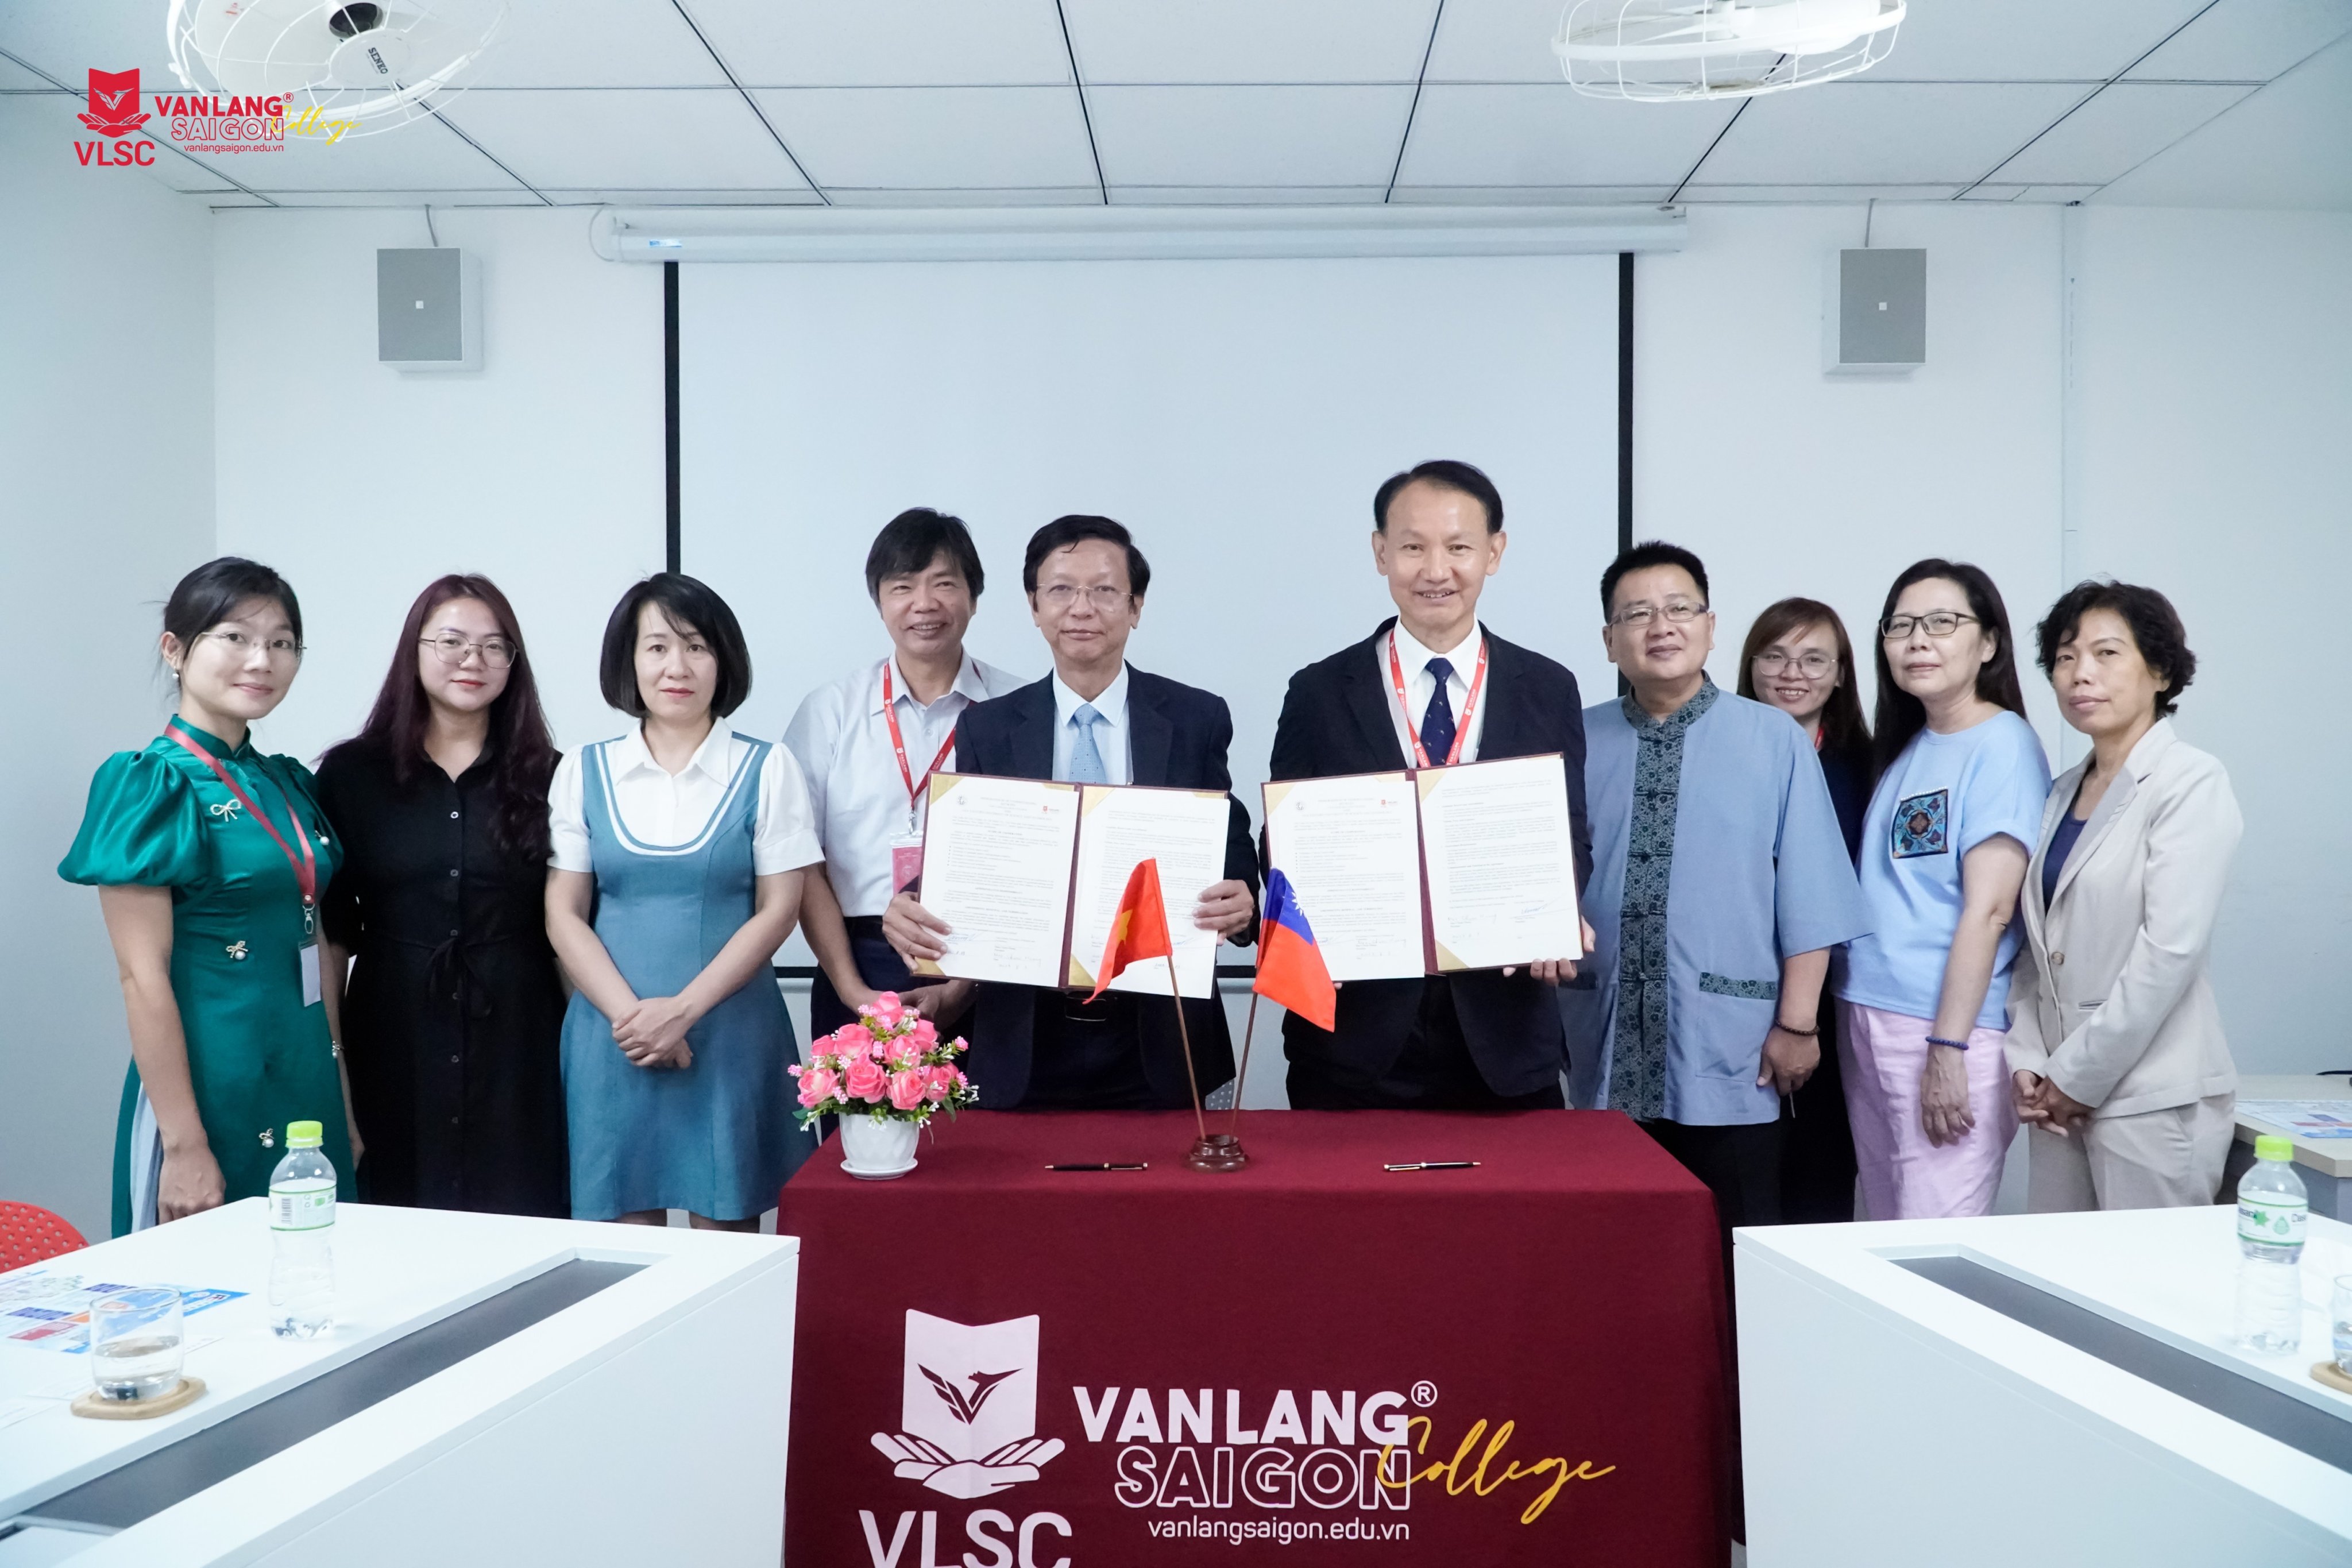 Cao đẳng Văn Lang Sài Gòn và Đại học Khoa Học Kỹ Thuật Á Đông (Đài Loan) ký kết hợp tác chiến lược – Thêm cơ hội học tập và việc làm Quốc Tế cho sinh viên VLSC